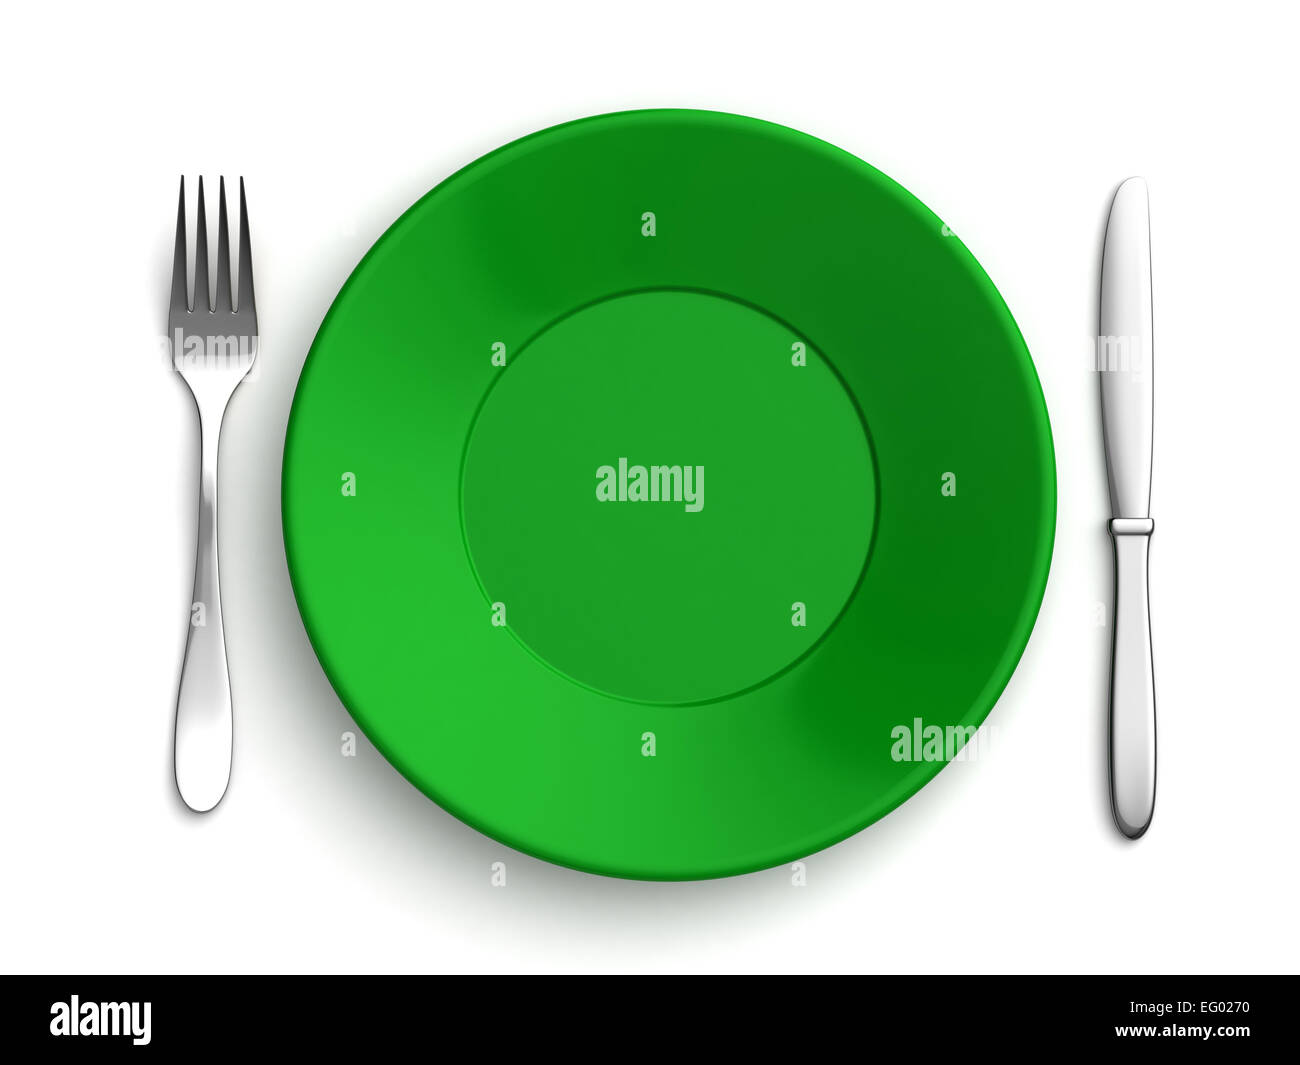 Le rendu 3D de couteaux, fourchettes et plaque verte sur fond blanc Banque D'Images